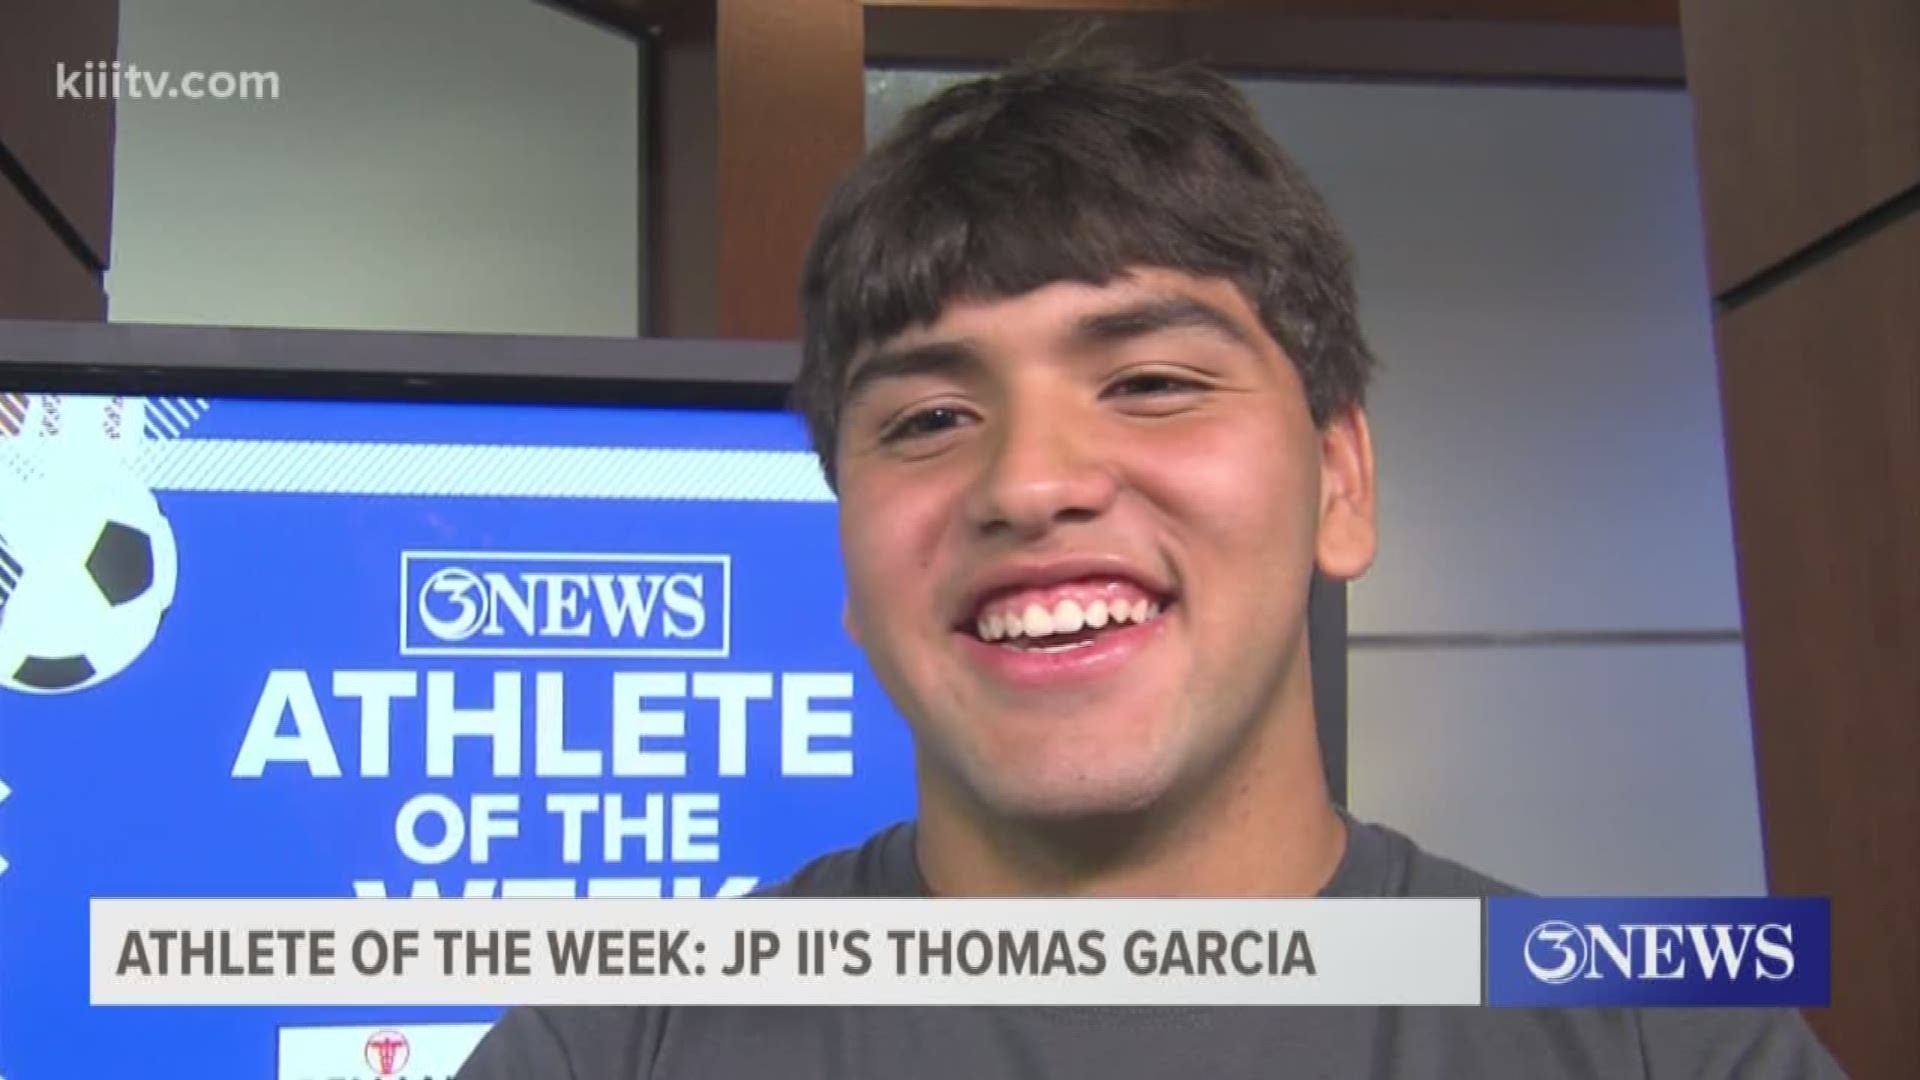 This week we had a John Paul II football player in the studio, Thomas Garcia is this week's Athlete of the Week!